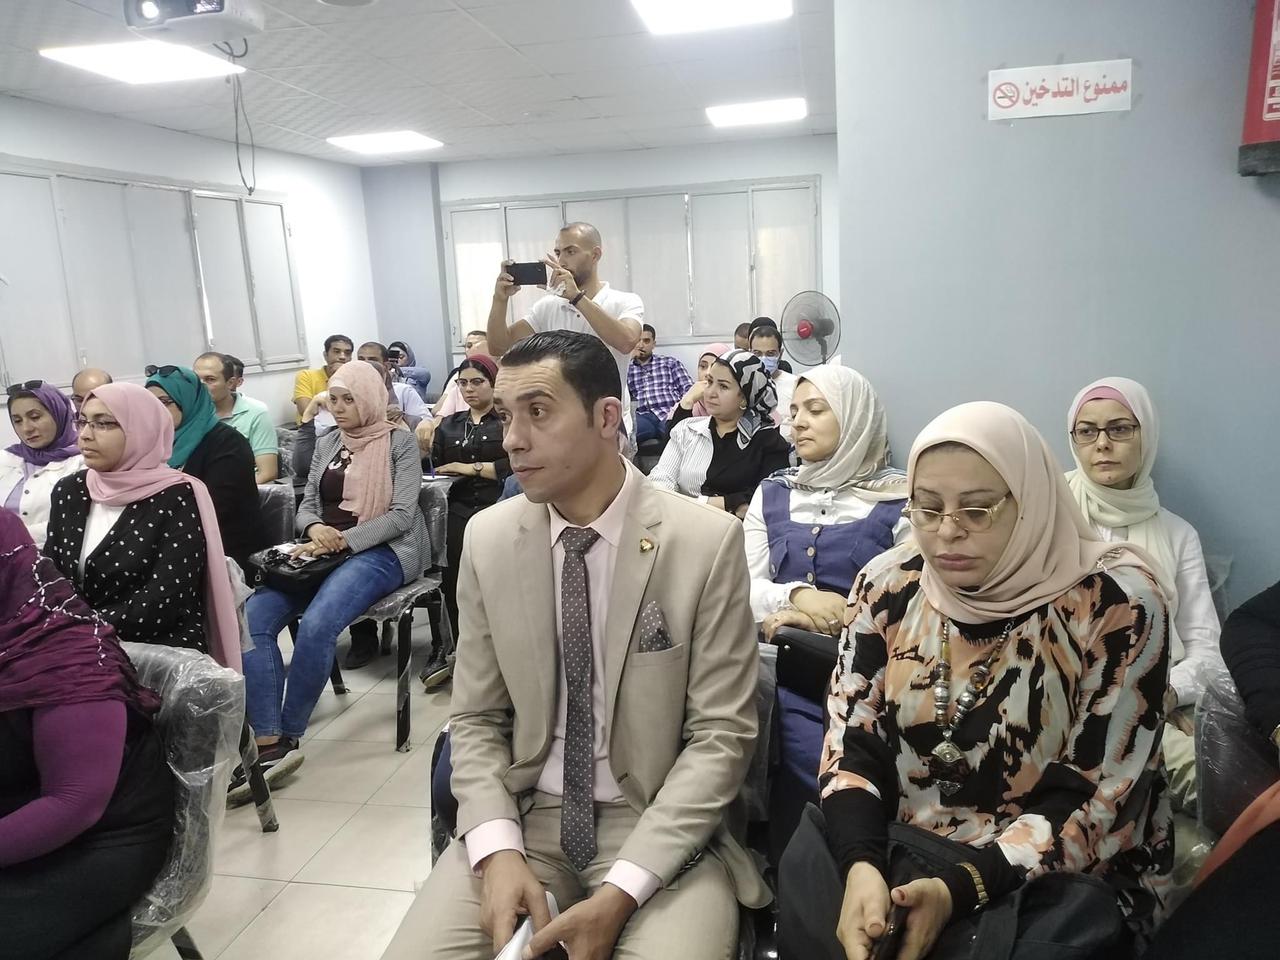  فعاليات سفراء الوعي في محافظة الدقهلية